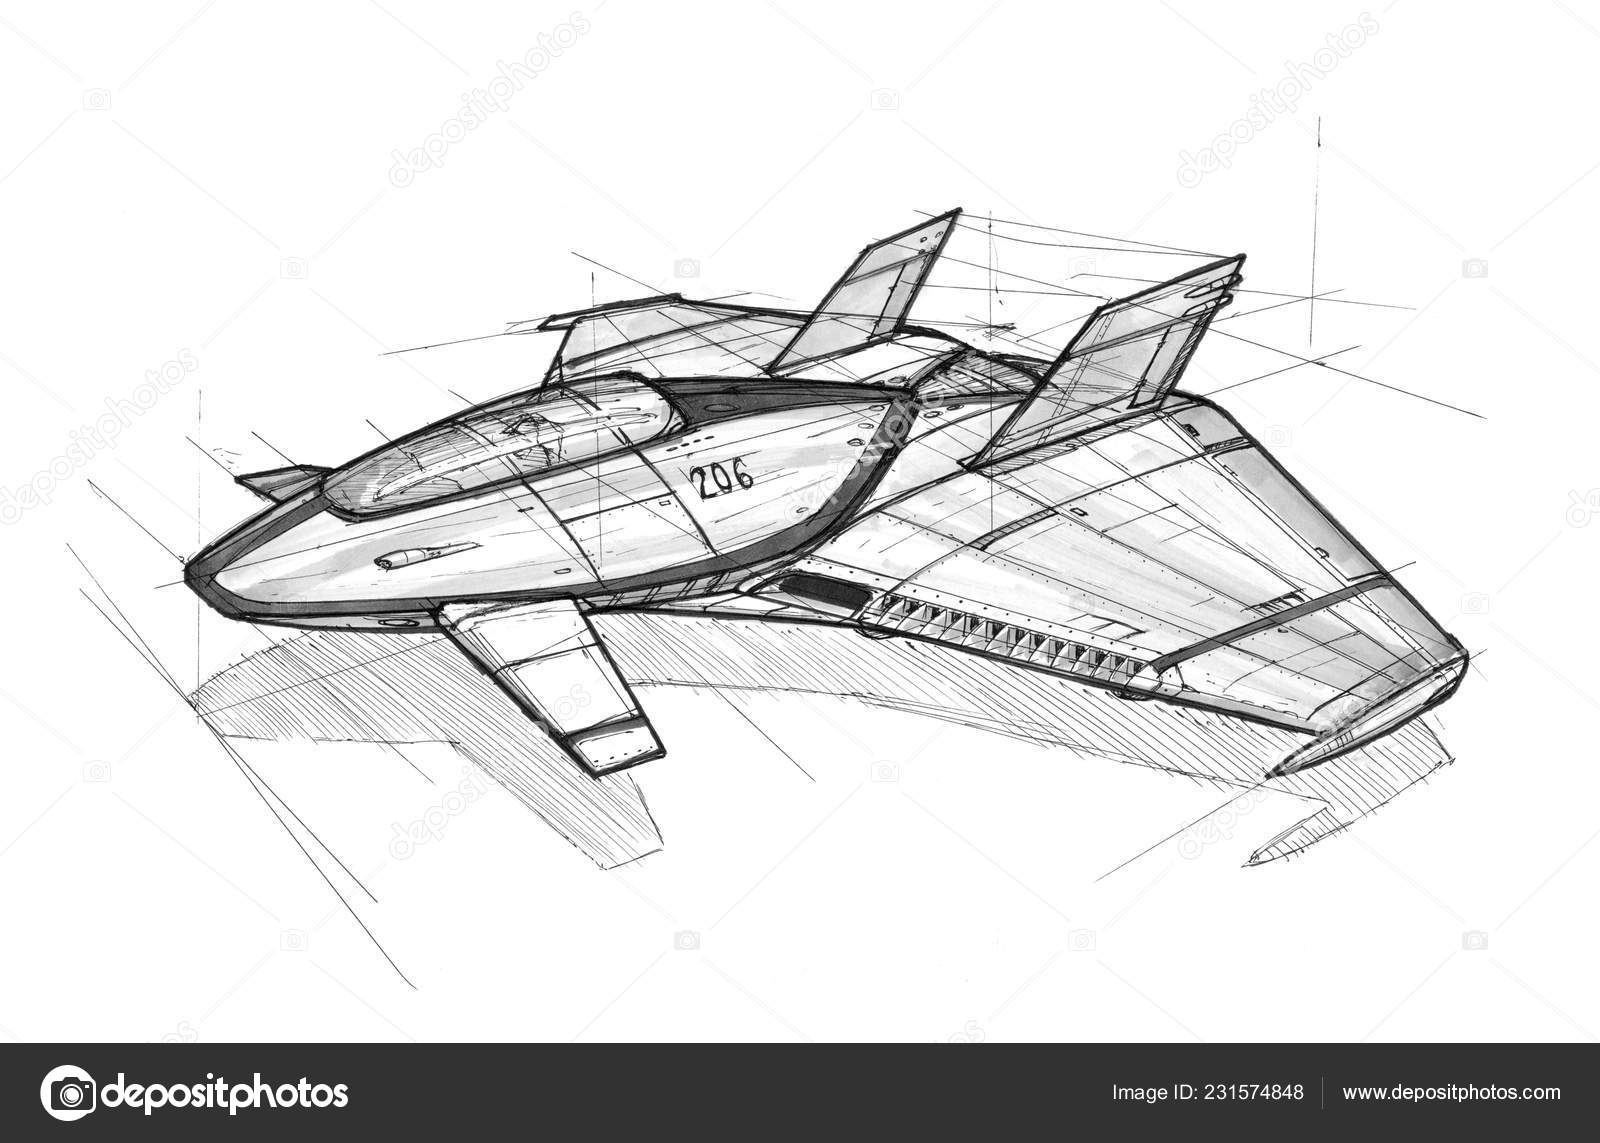 Spaceship pencil sketch on Craiyon